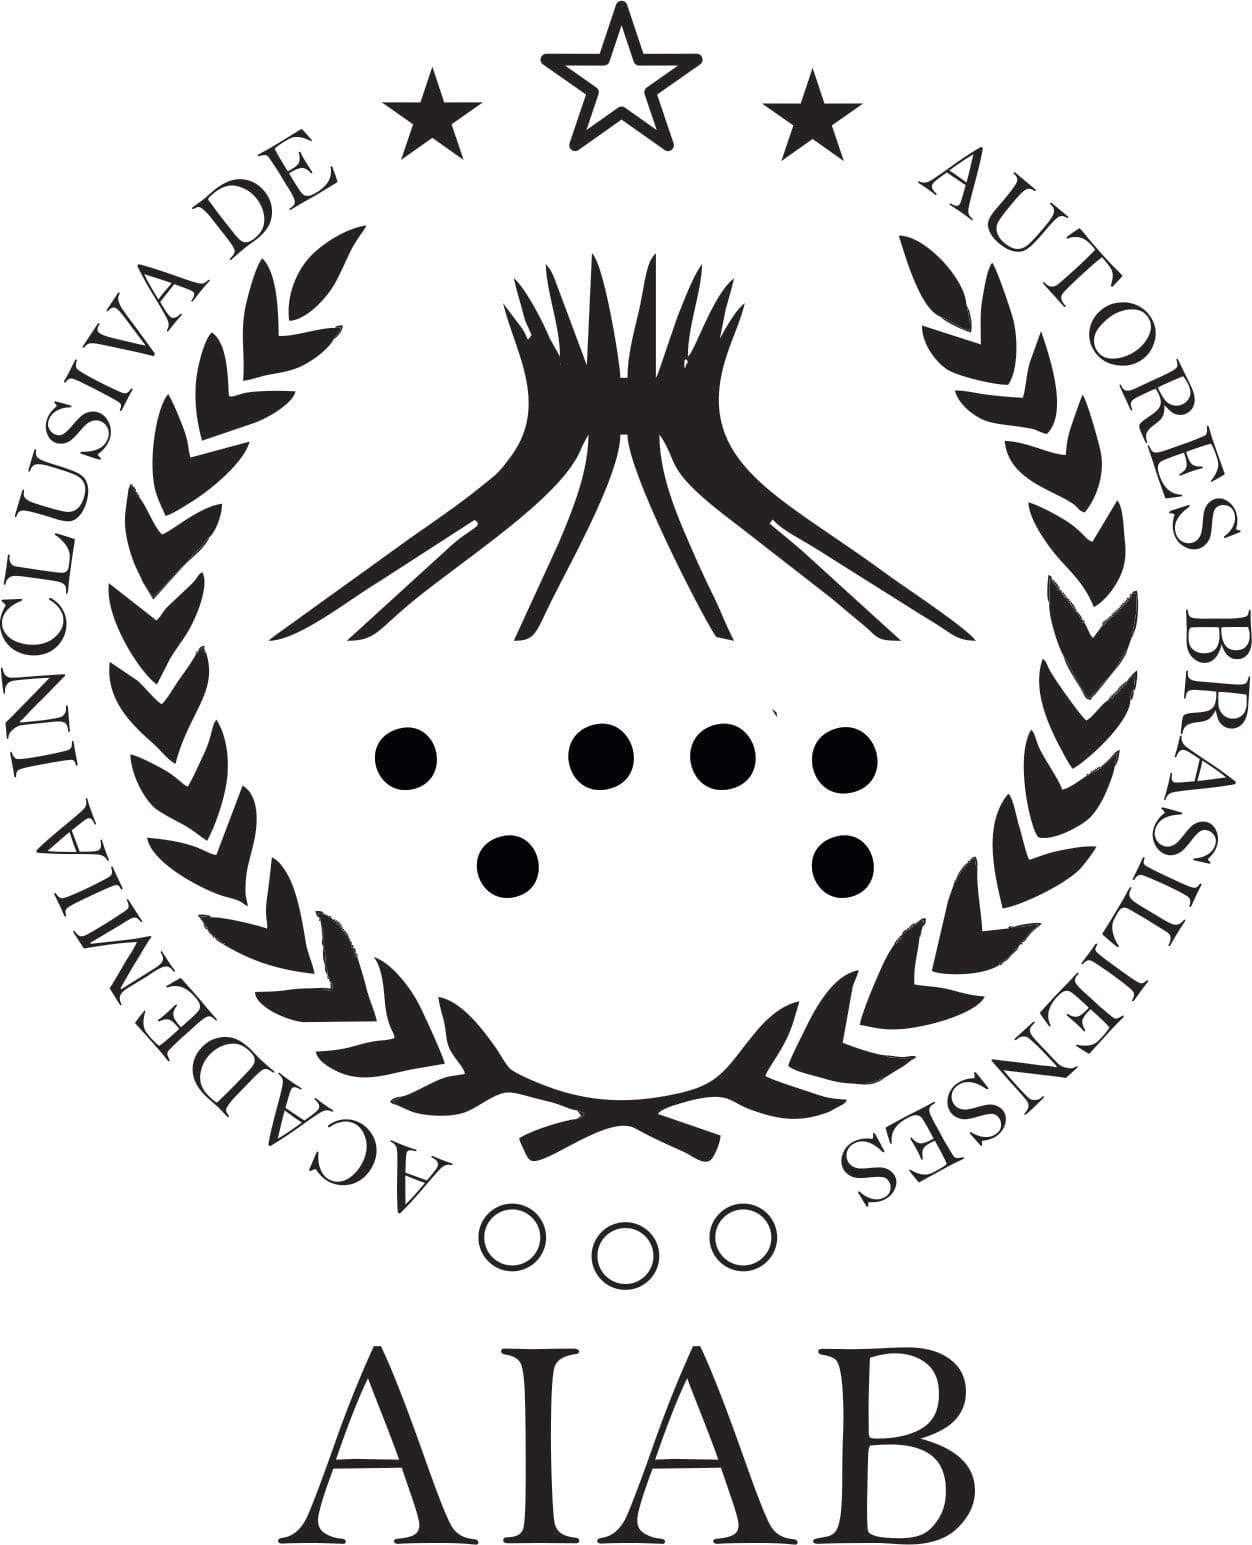 Academia Inclusiva de Autores Brasilienses